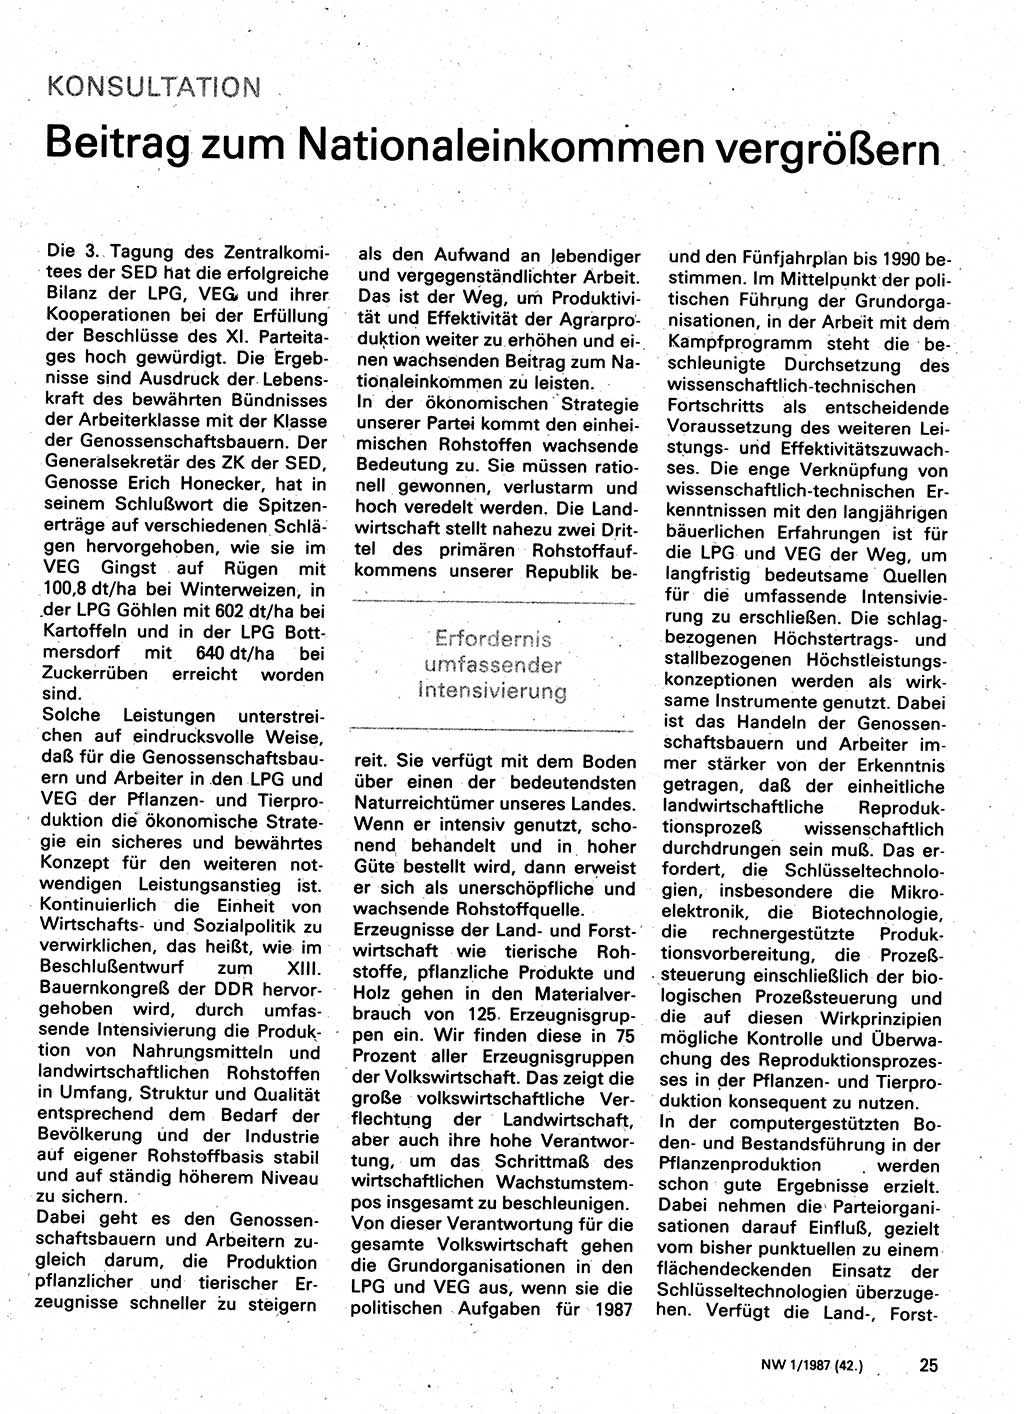 Neuer Weg (NW), Organ des Zentralkomitees (ZK) der SED (Sozialistische Einheitspartei Deutschlands) für Fragen des Parteilebens, 42. Jahrgang [Deutsche Demokratische Republik (DDR)] 1987, Seite 25 (NW ZK SED DDR 1987, S. 25)